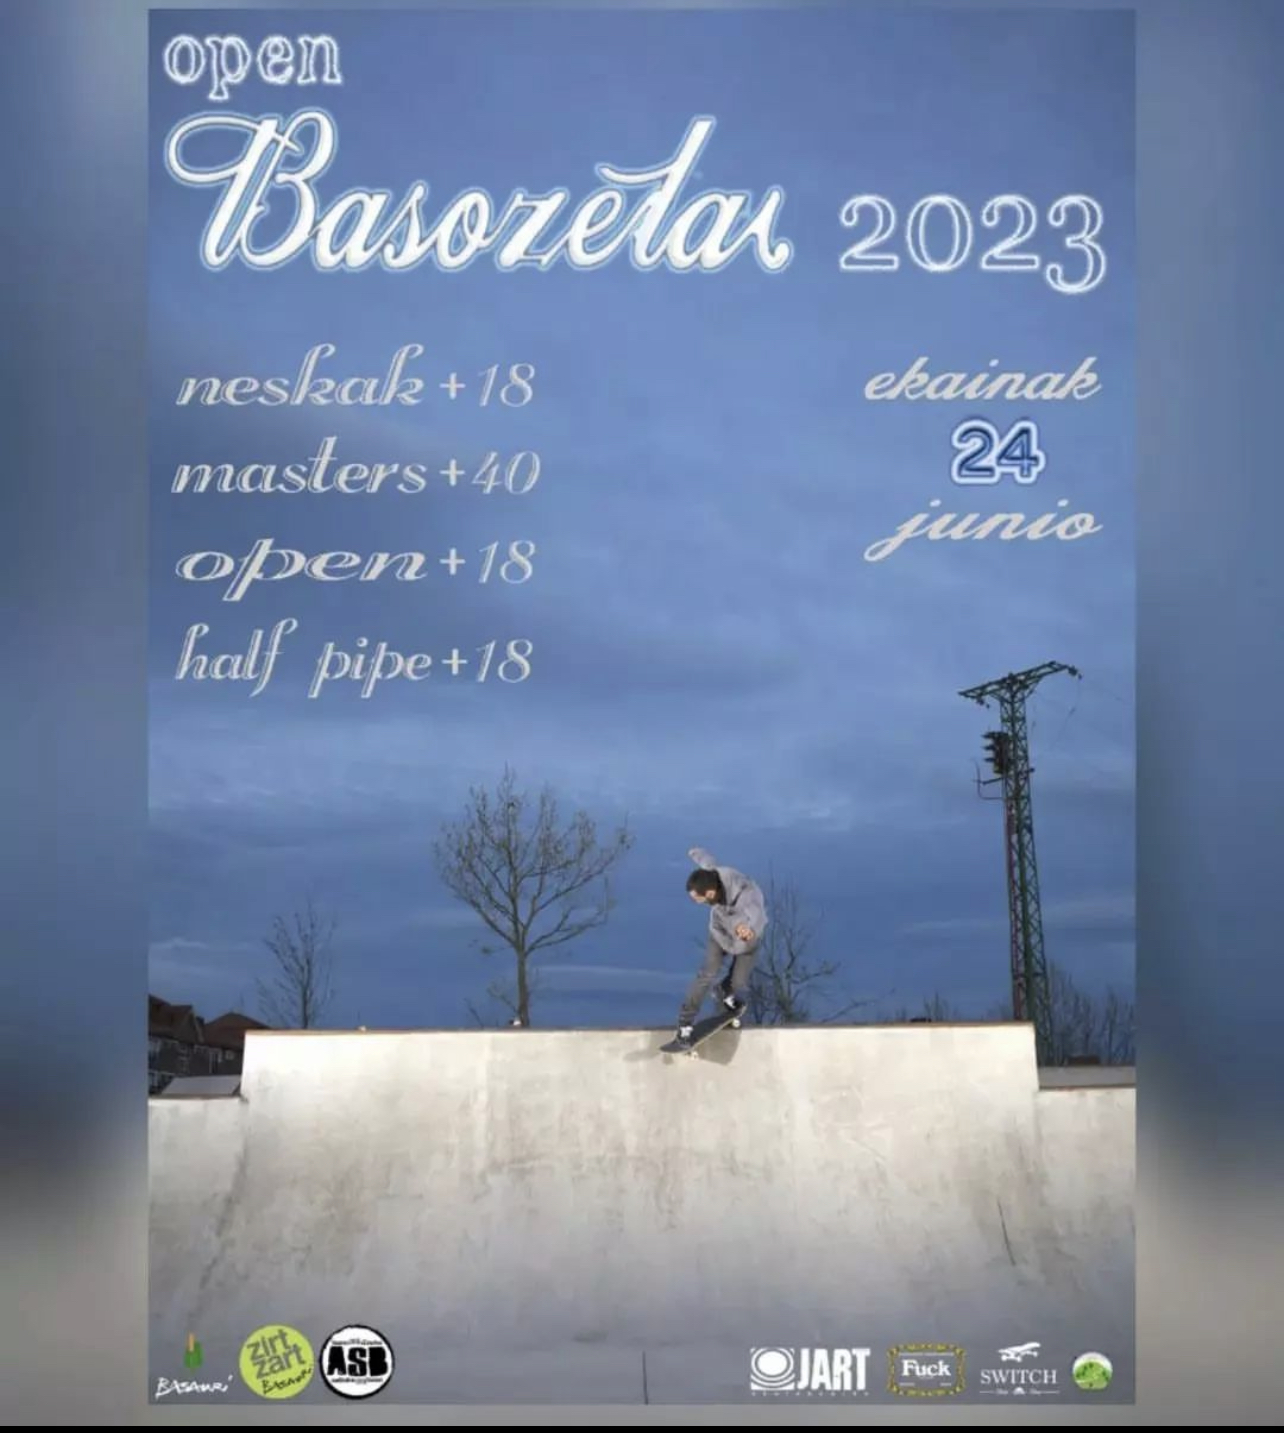 open basozelai 2023